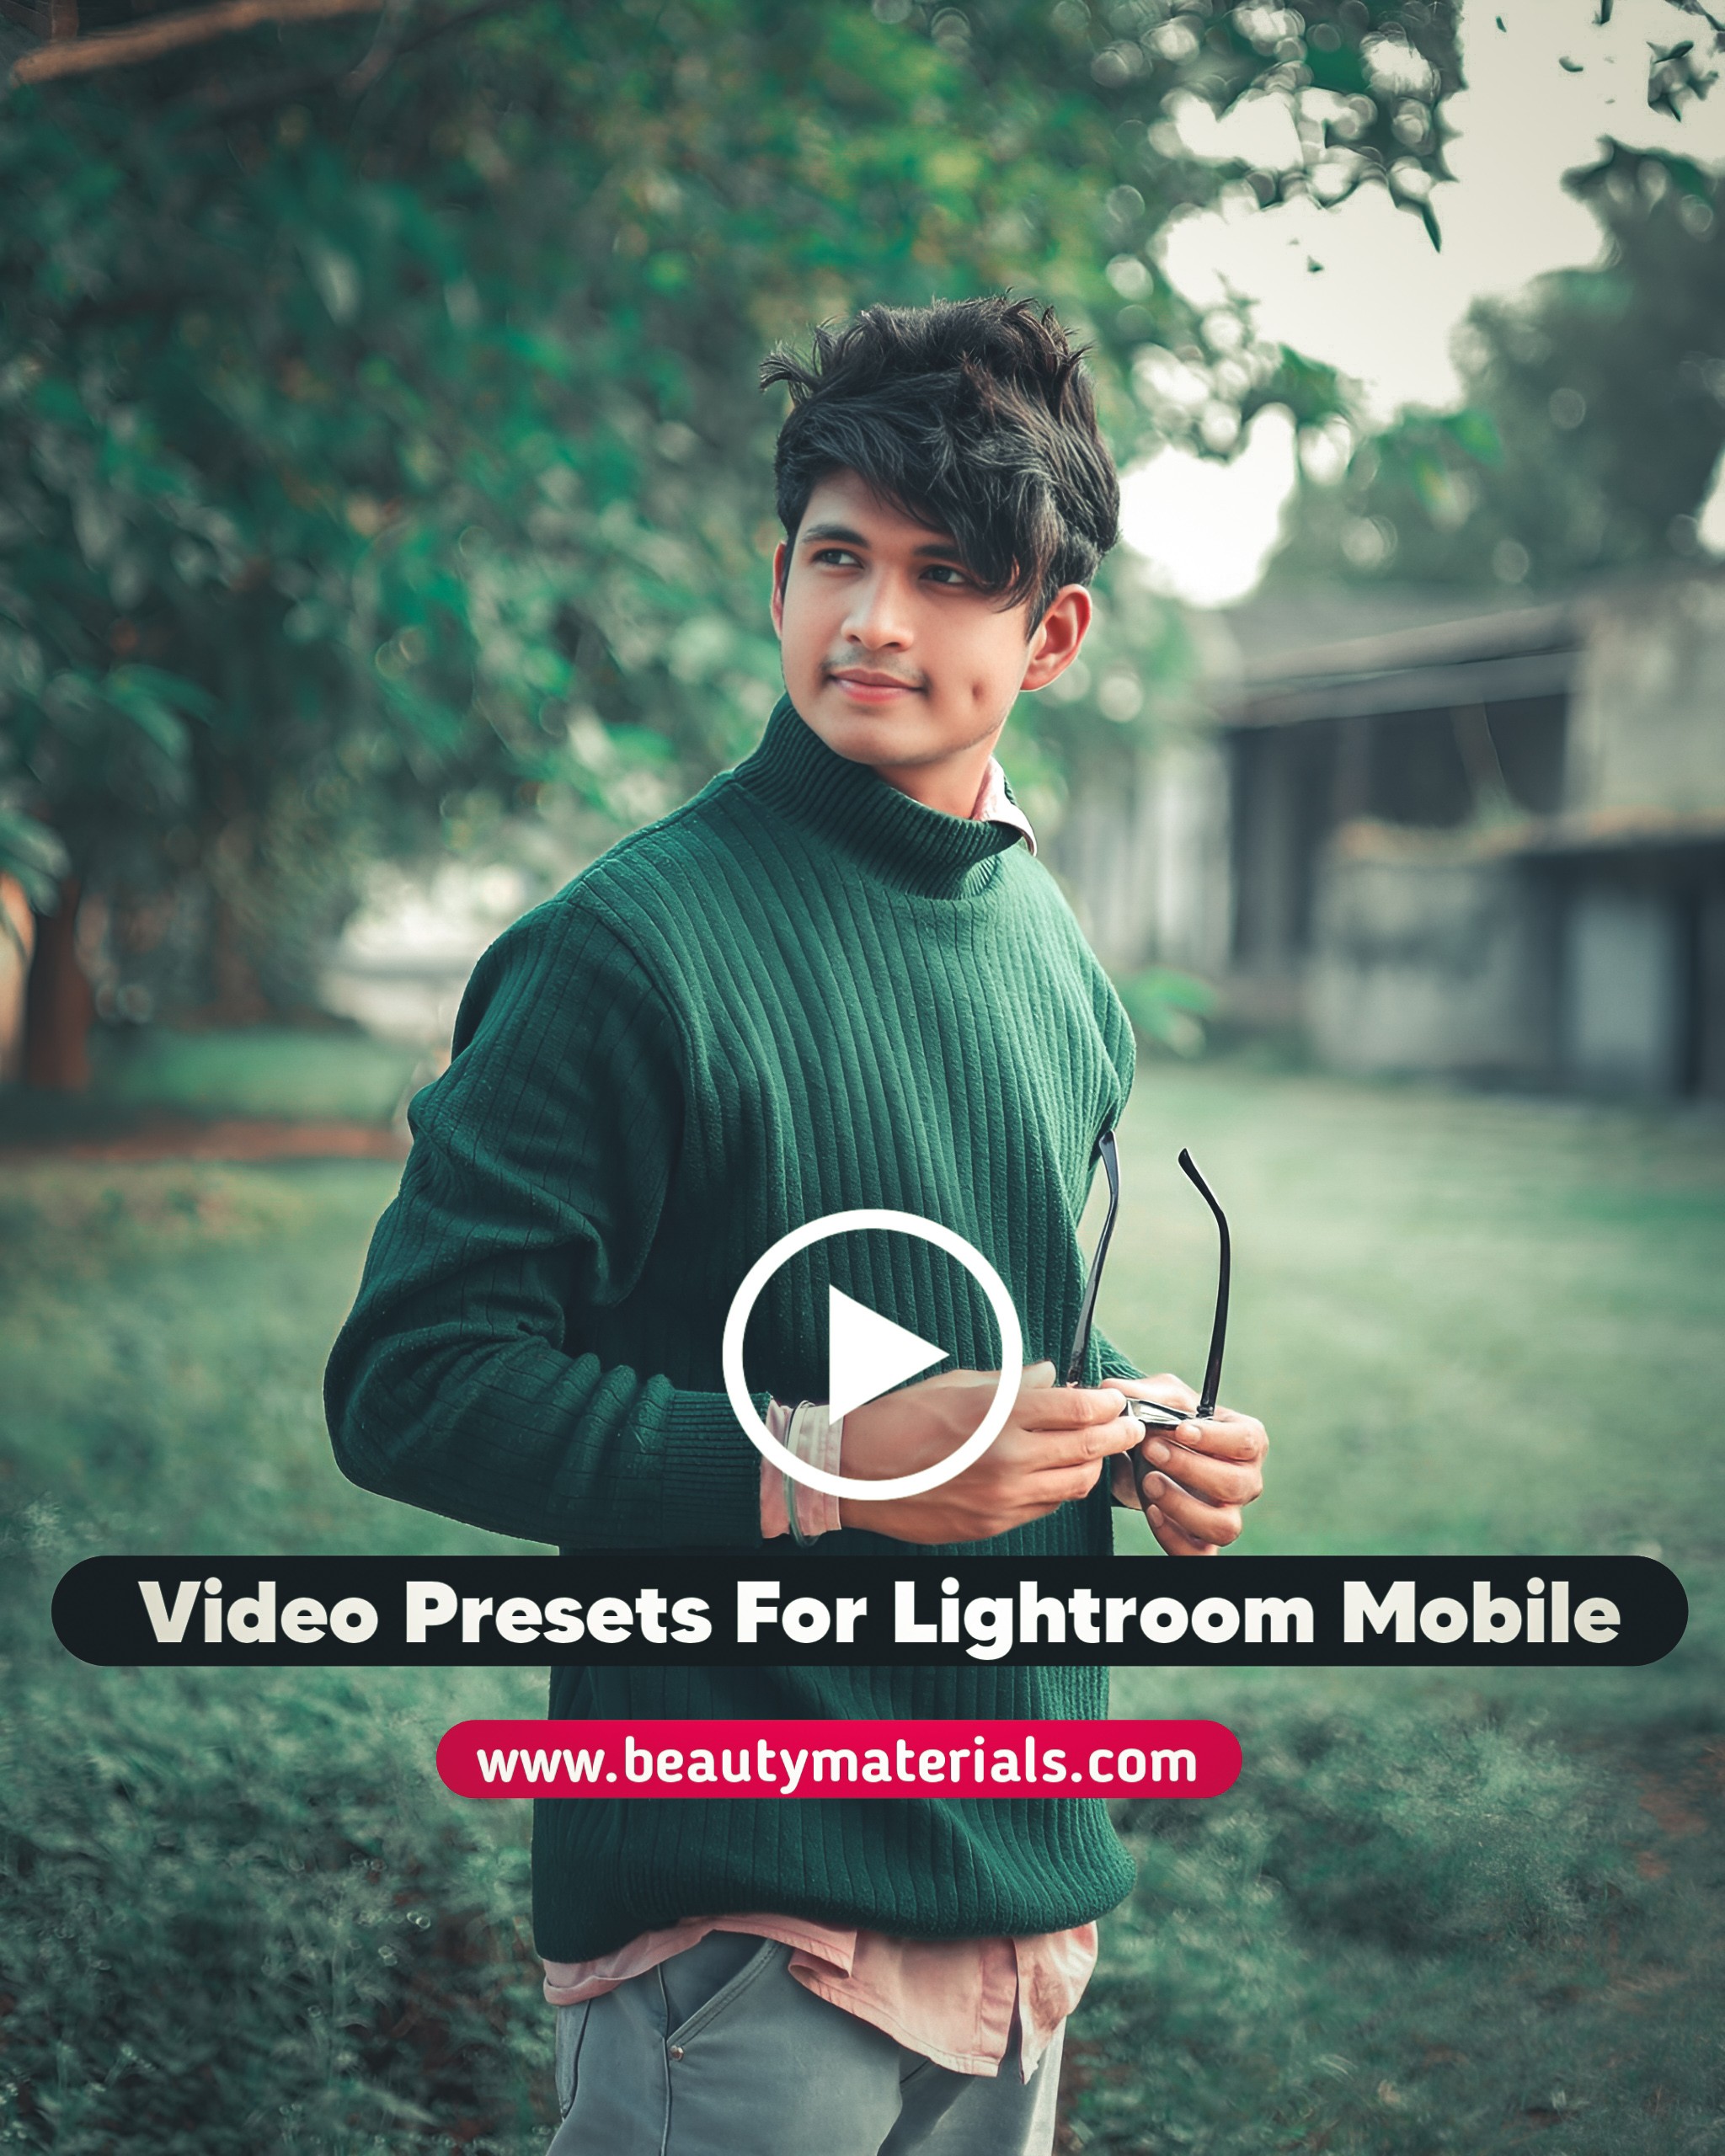 Video Presets For Lightroom Mobile 